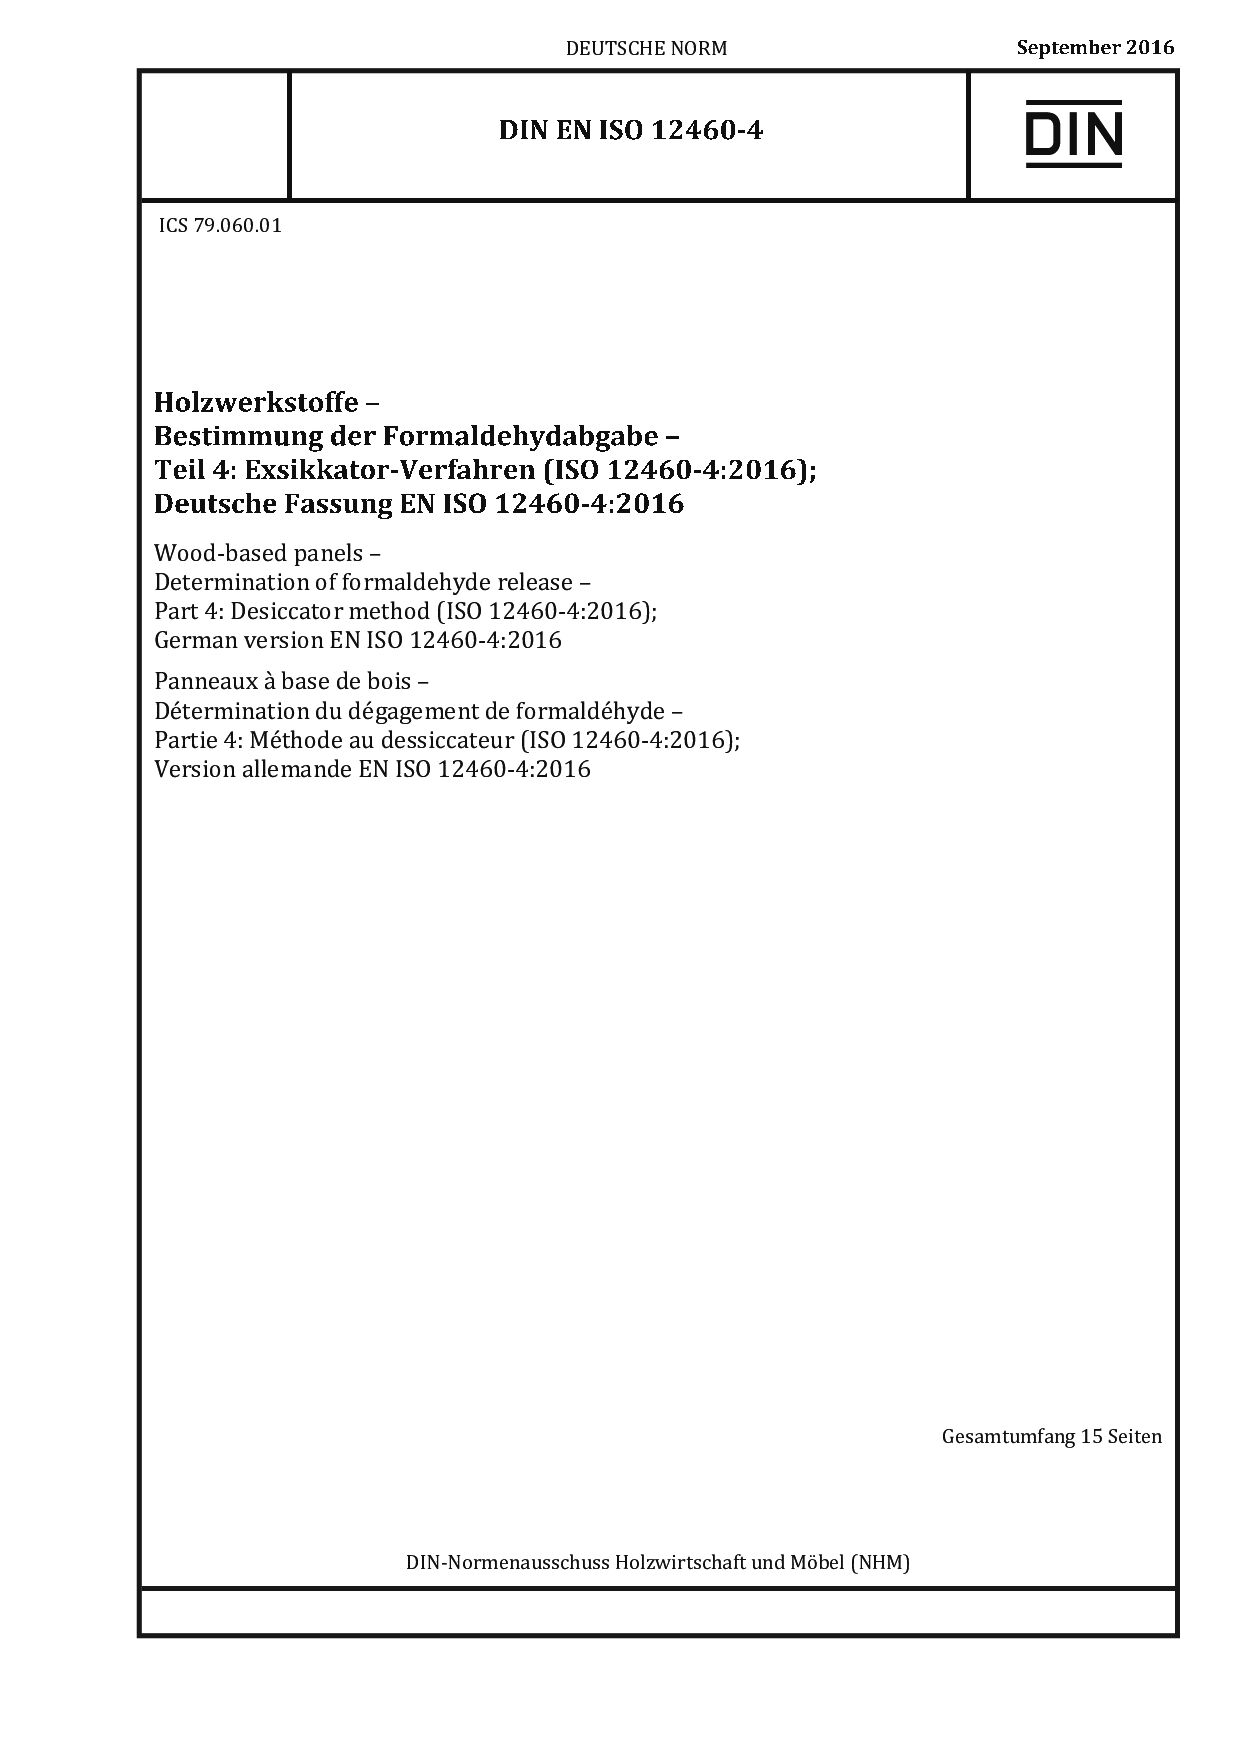 DIN EN ISO 12460-4:2016封面图